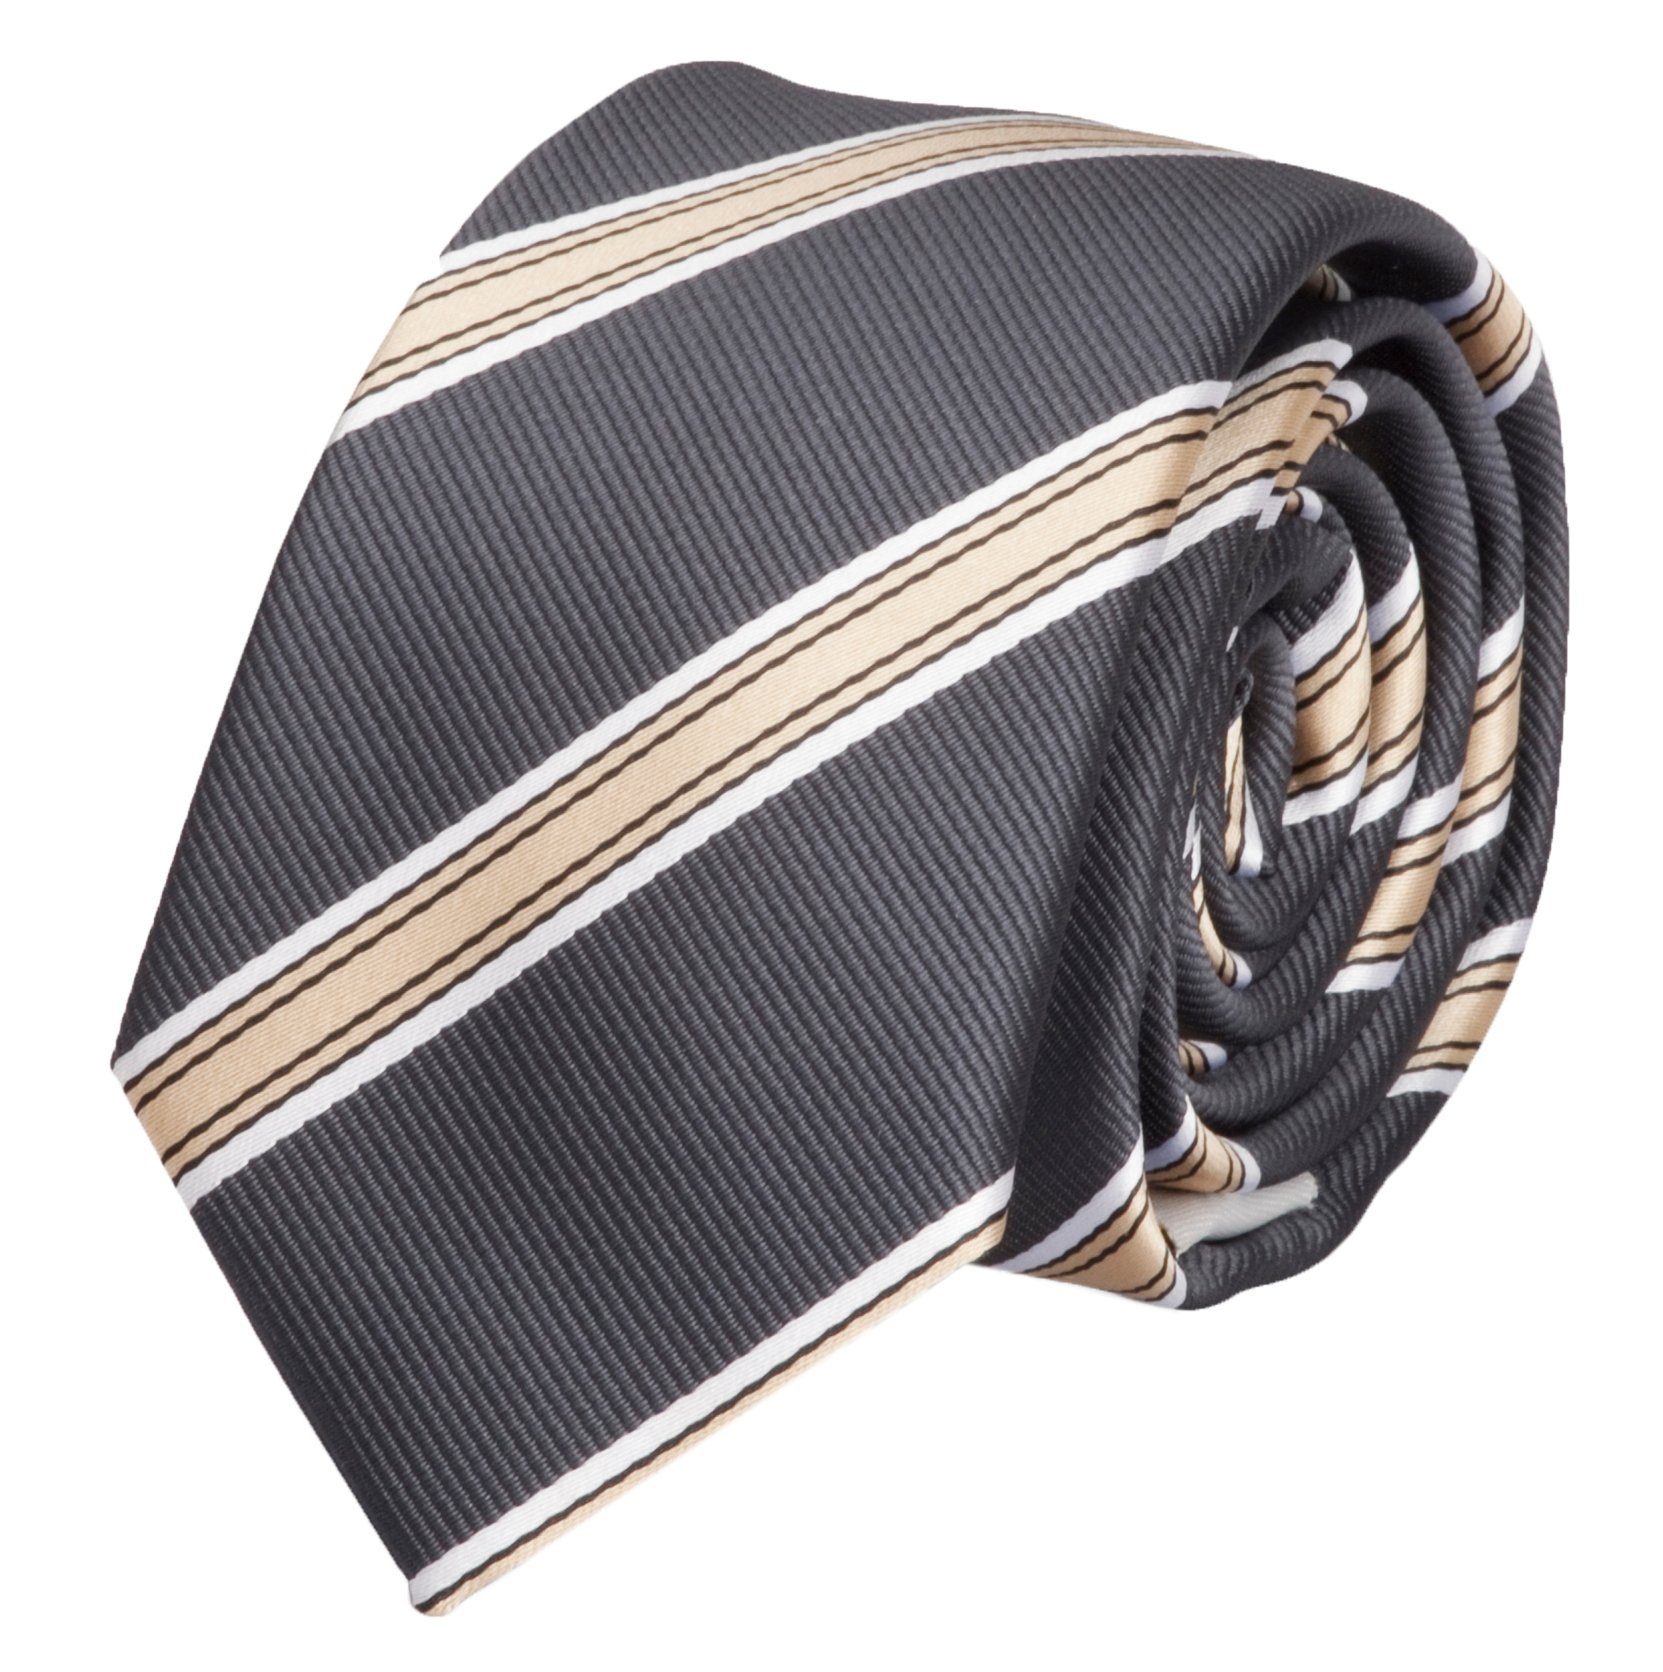 Fabio Farini Krawatte gestreifte Herren Krawatte - Tie mit Streifen in 6cm oder 8cm Breite (ohne Box, Gestreift) Schmal (6cm), Schwarz/Gold/Weiß